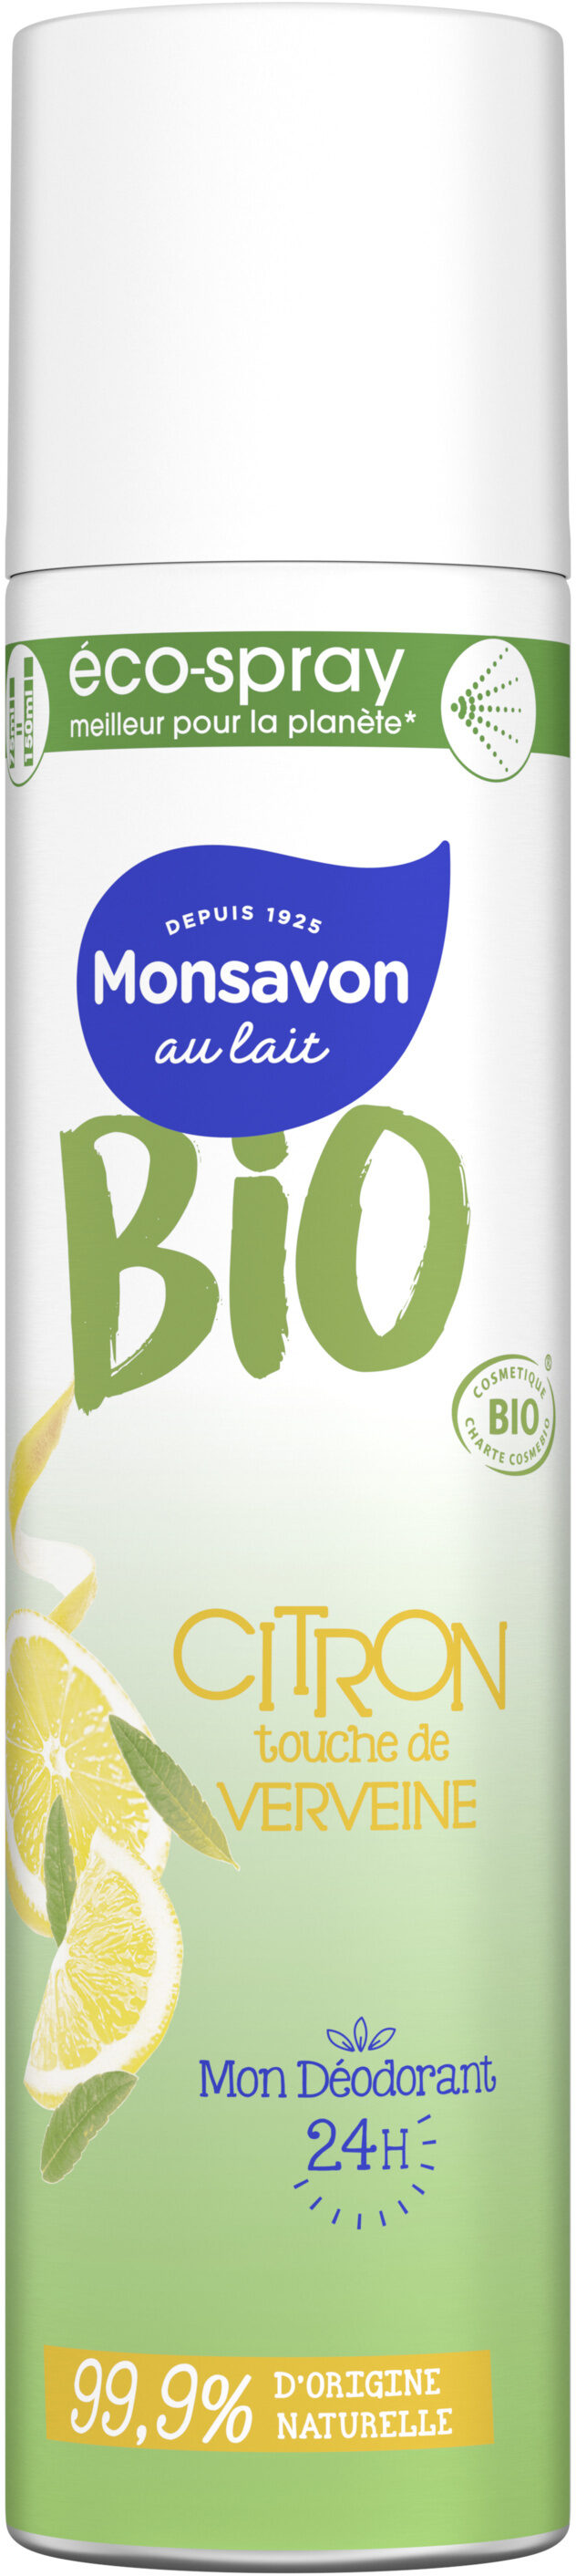 Monsavon Déodorant Spray Bio Citron Touche de Verveine 75ml - Produit - fr